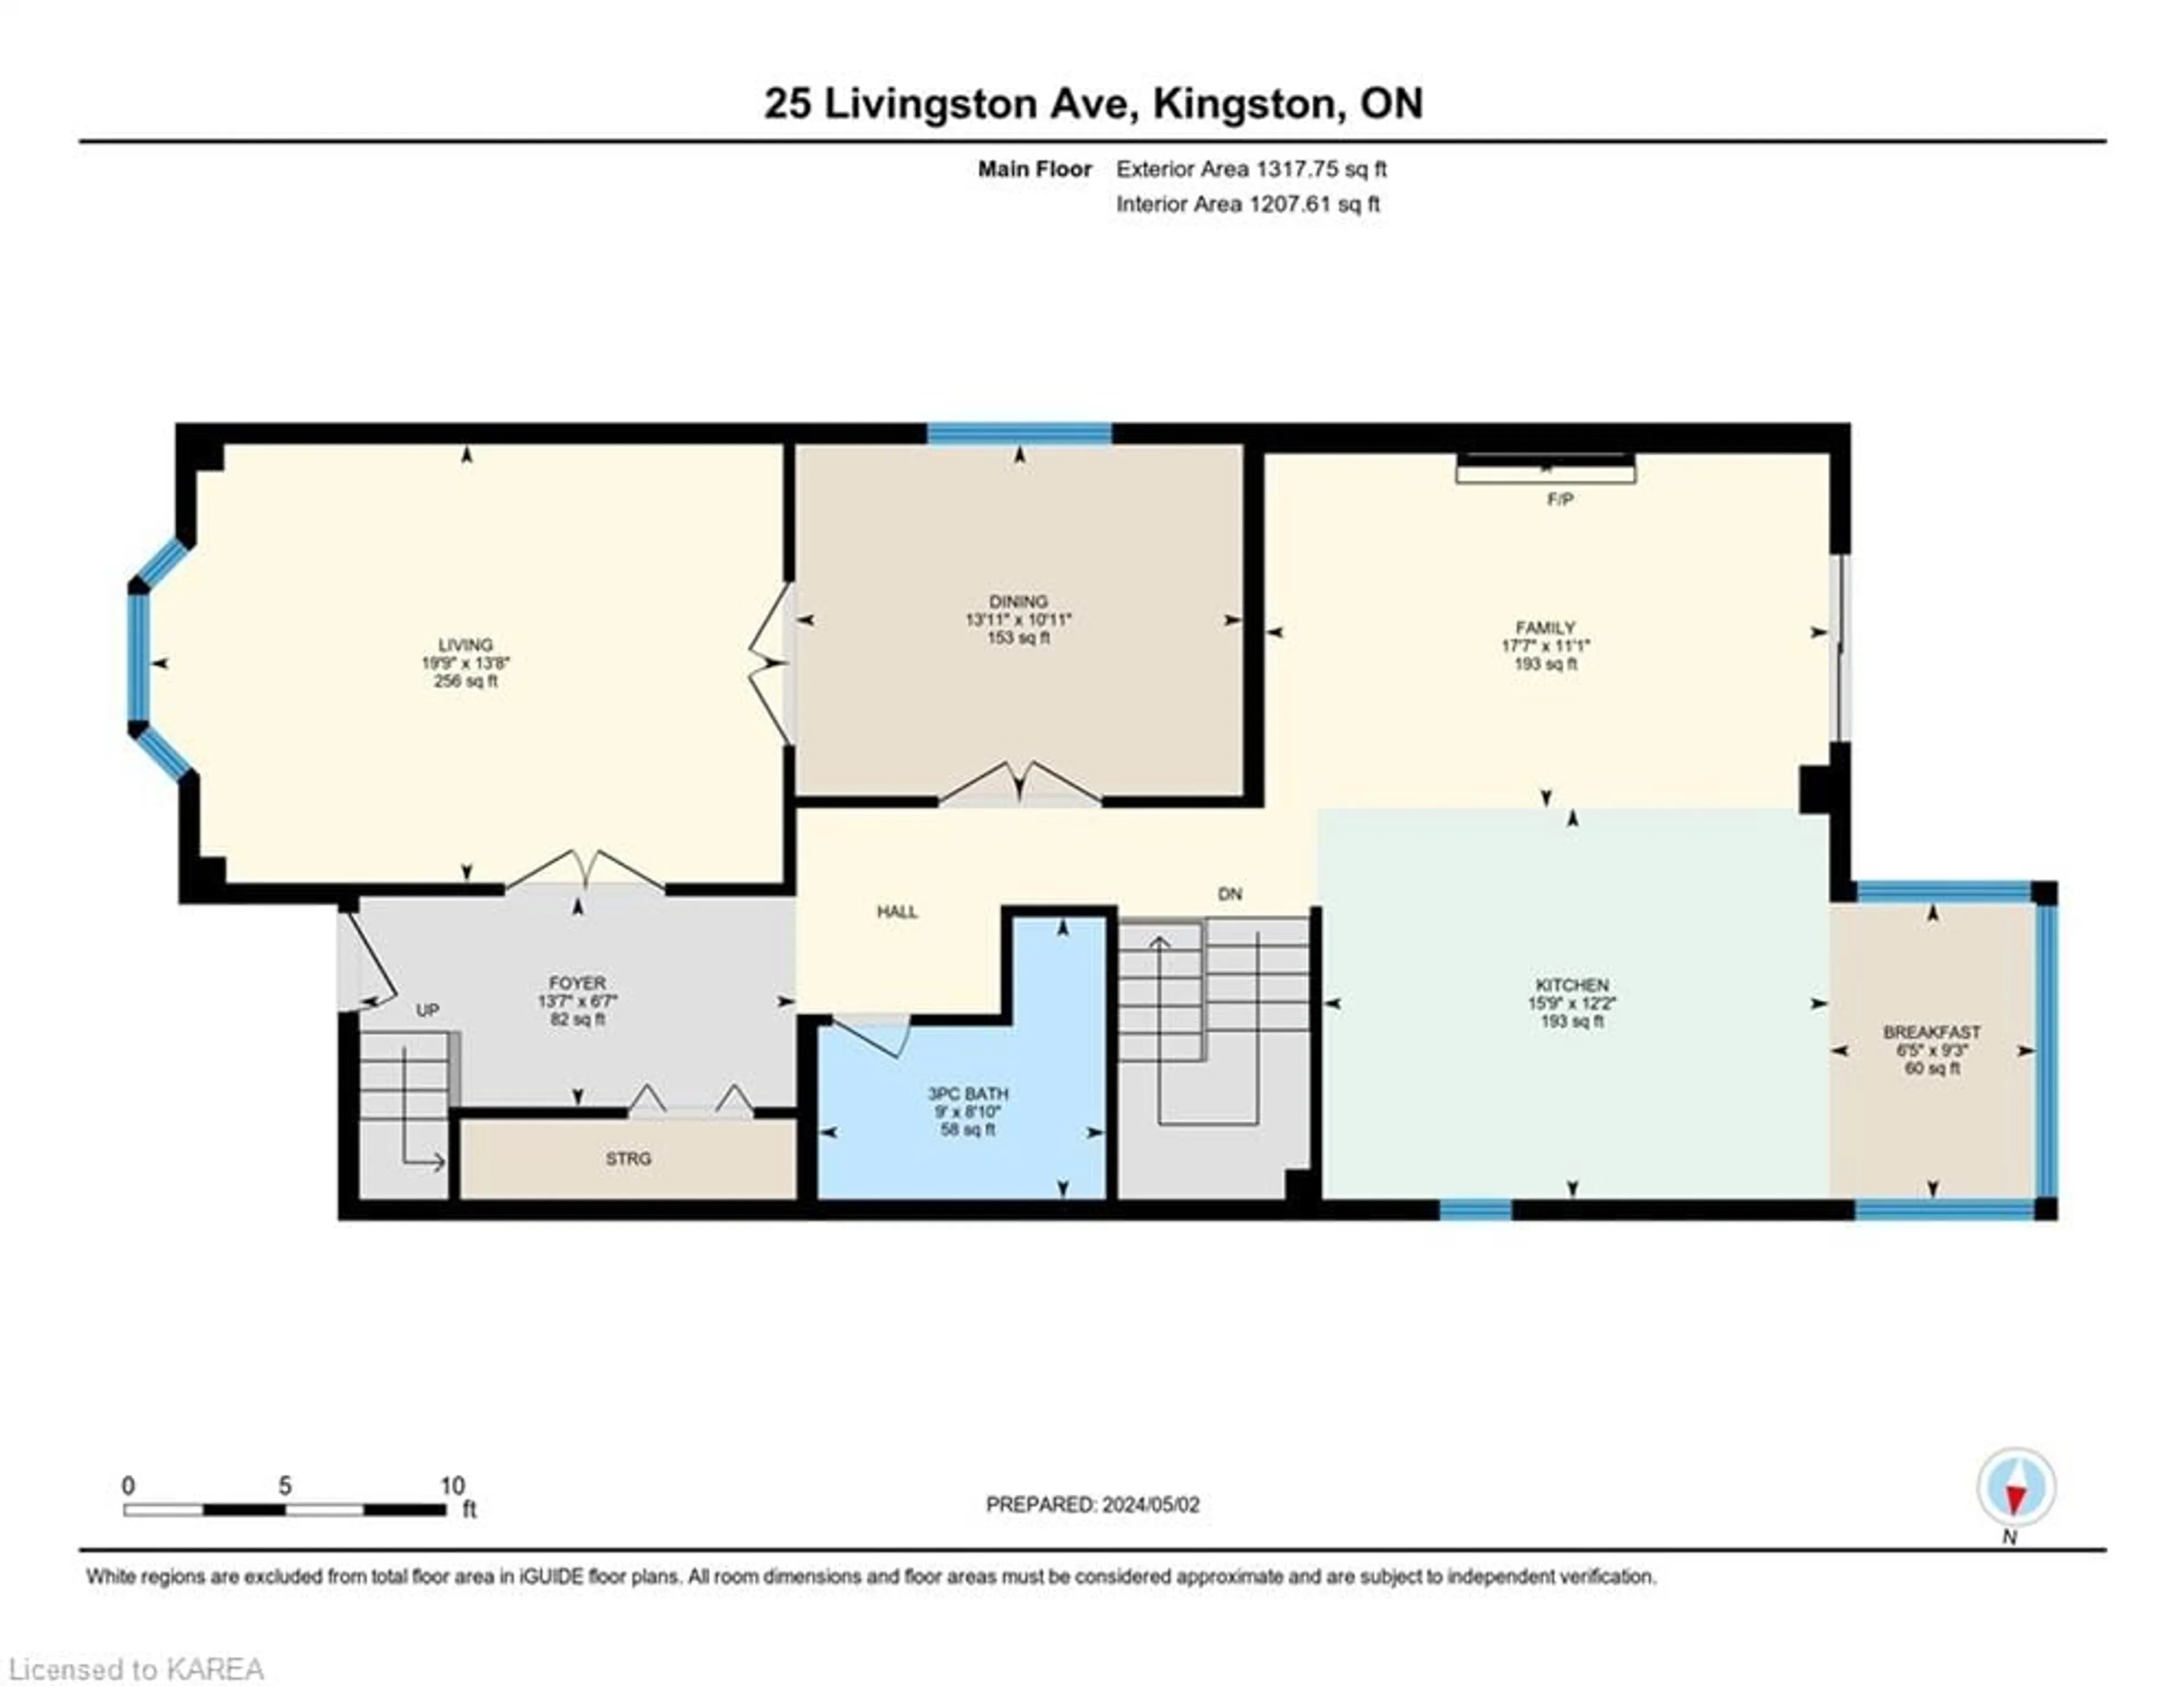 Floor plan for 25 Livingston Ave, Kingston Ontario K7L 4L1